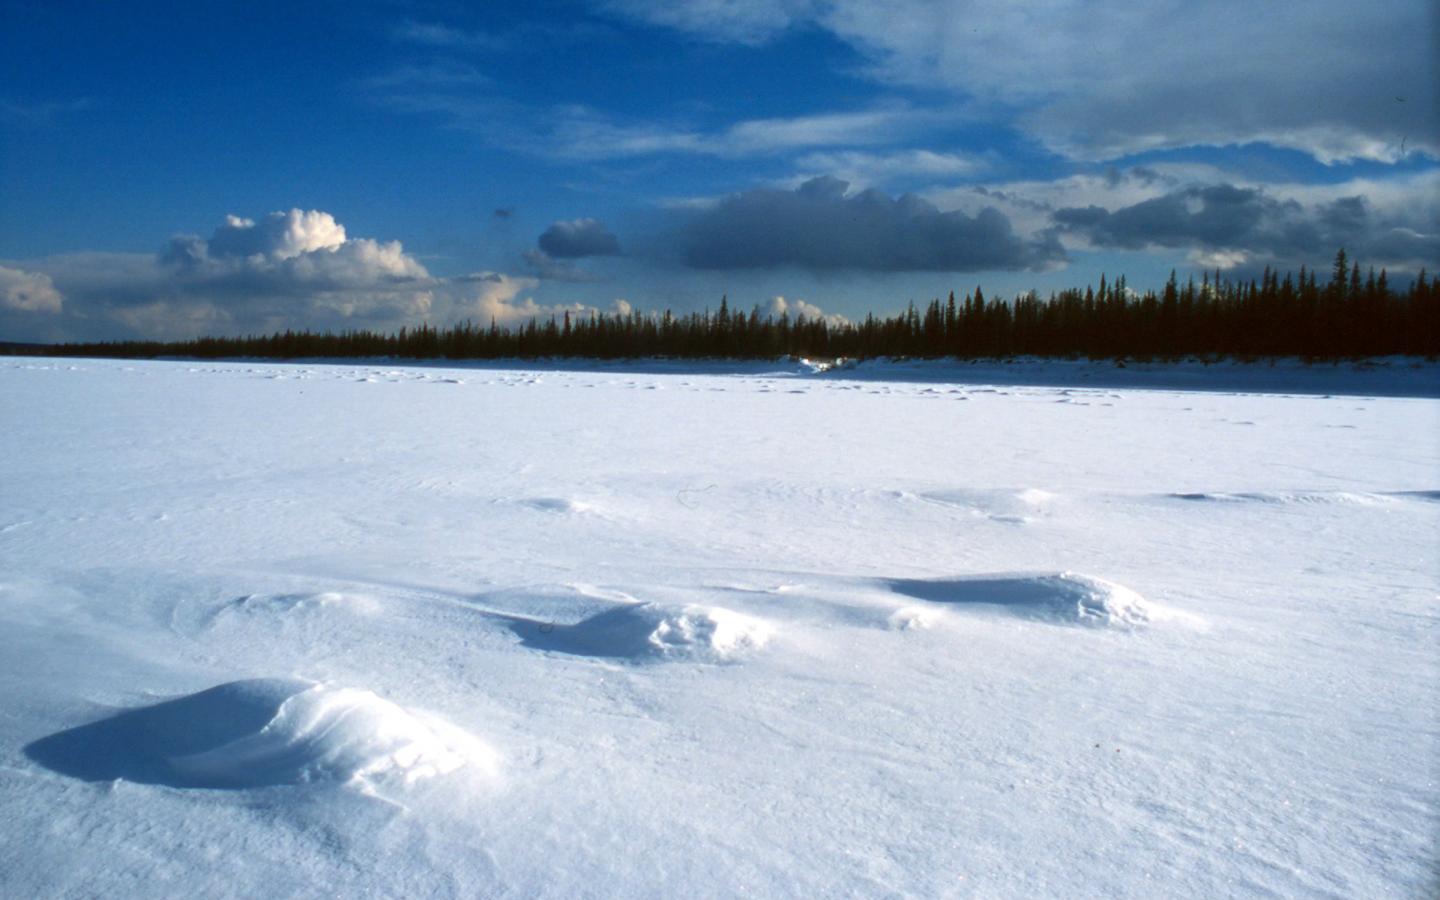 Le fleuve Lena congelée de république de Sakha, Sibérie (Fédération de Russie)